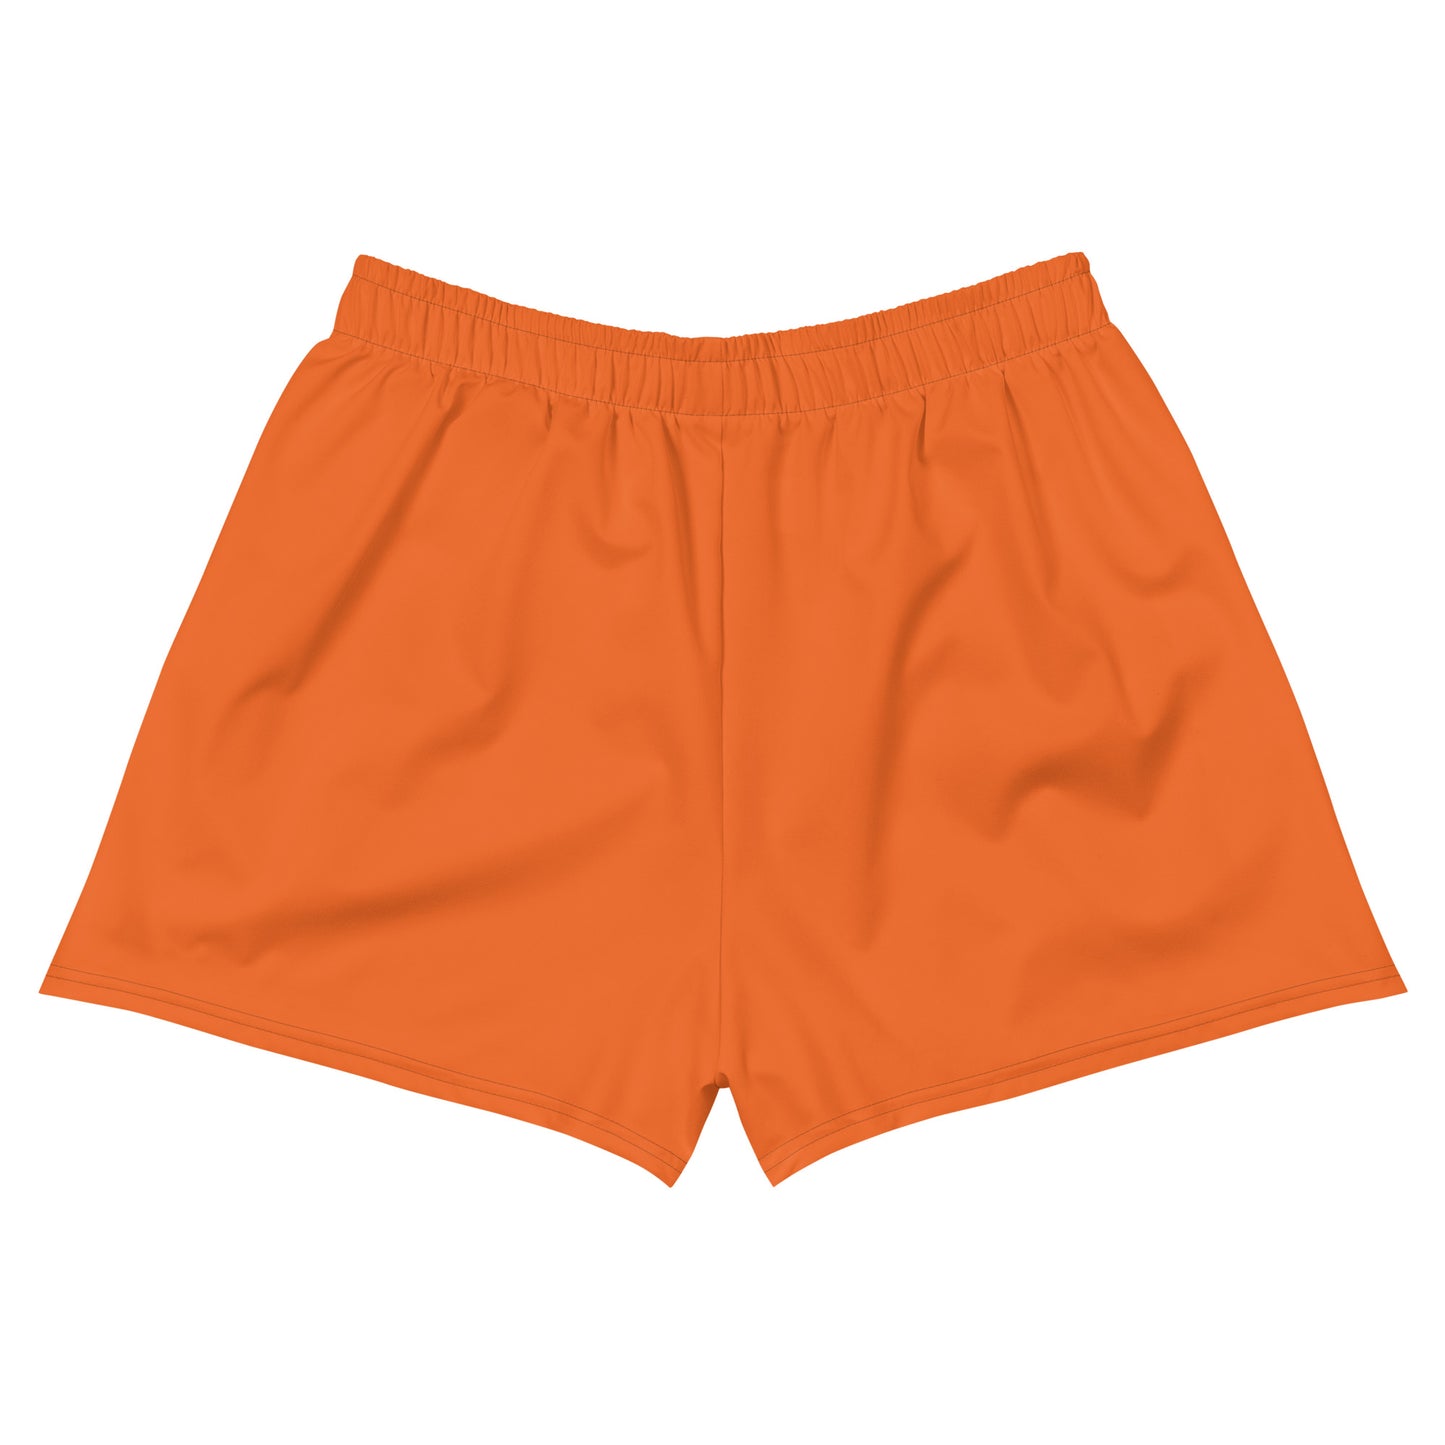 Orange Athletic Shorts